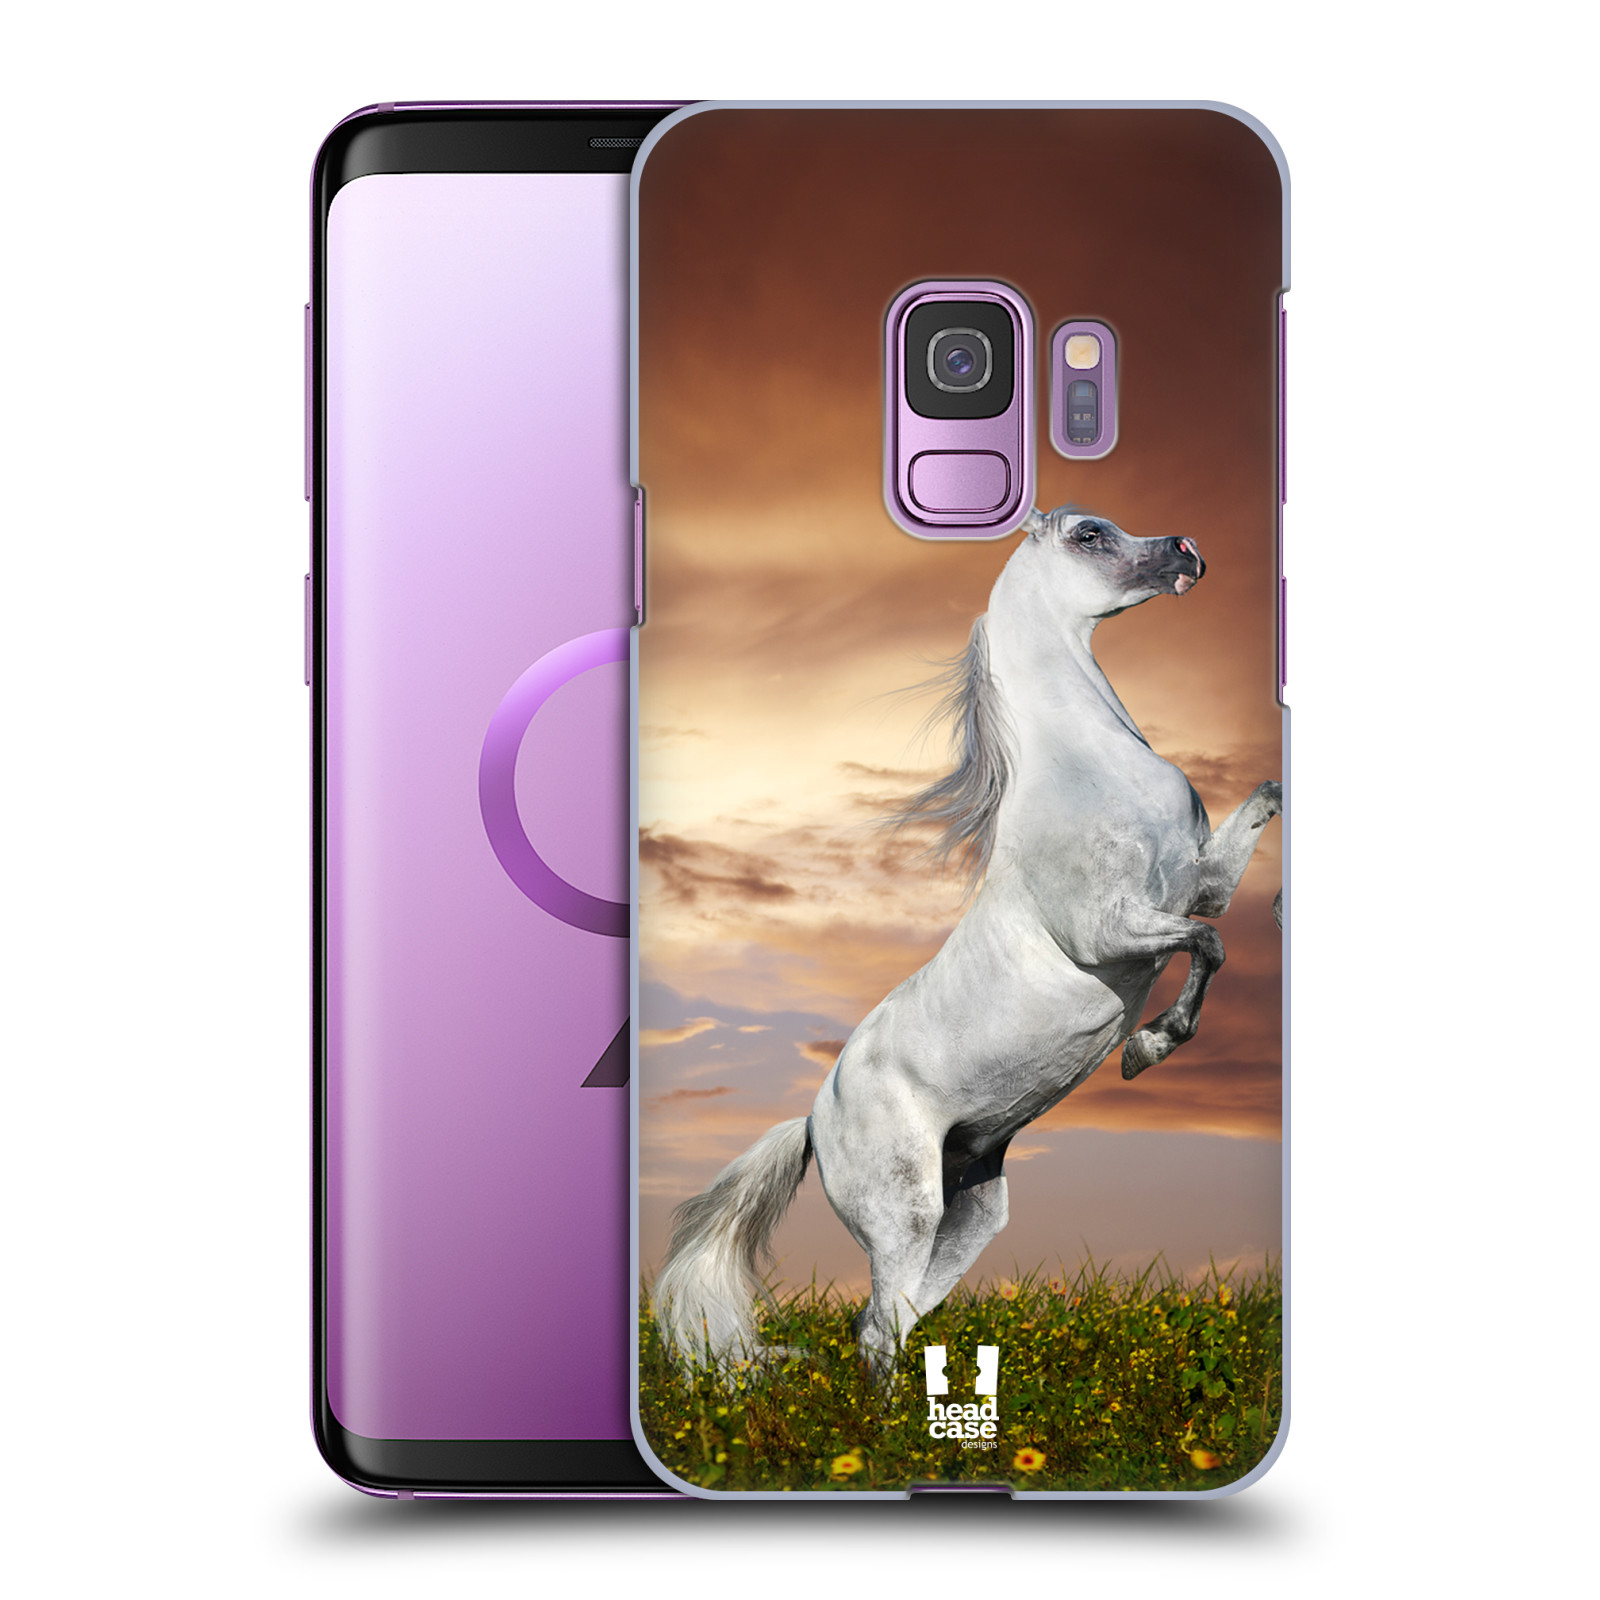 Zadní obal pro mobil Samsung Galaxy S9 - HEAD CASE - Svět zvířat divoký kůň